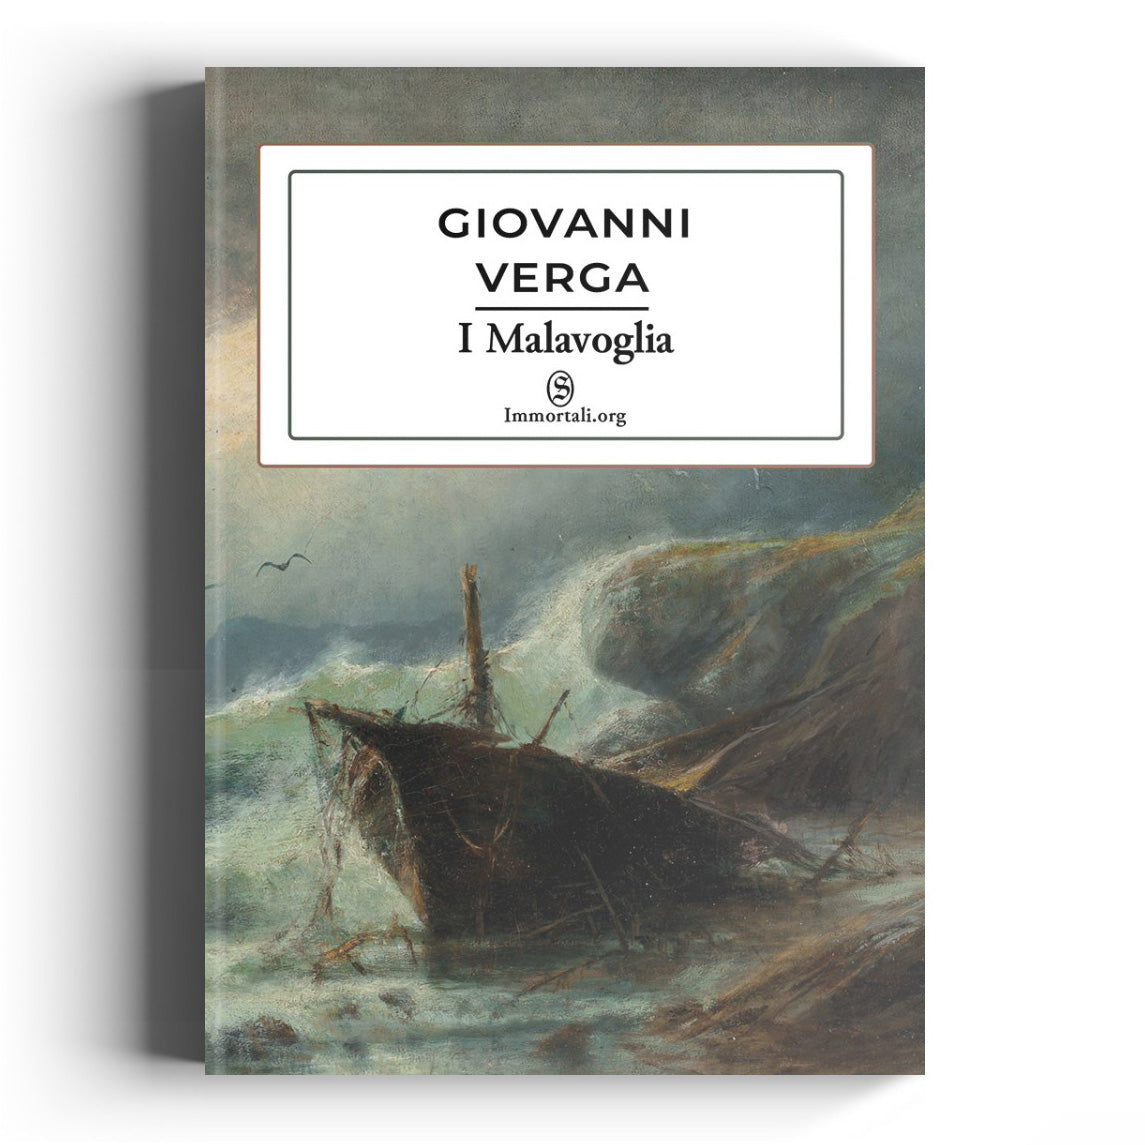 I Malavoglia: Giovanni Verga - Immortali Store: Libri